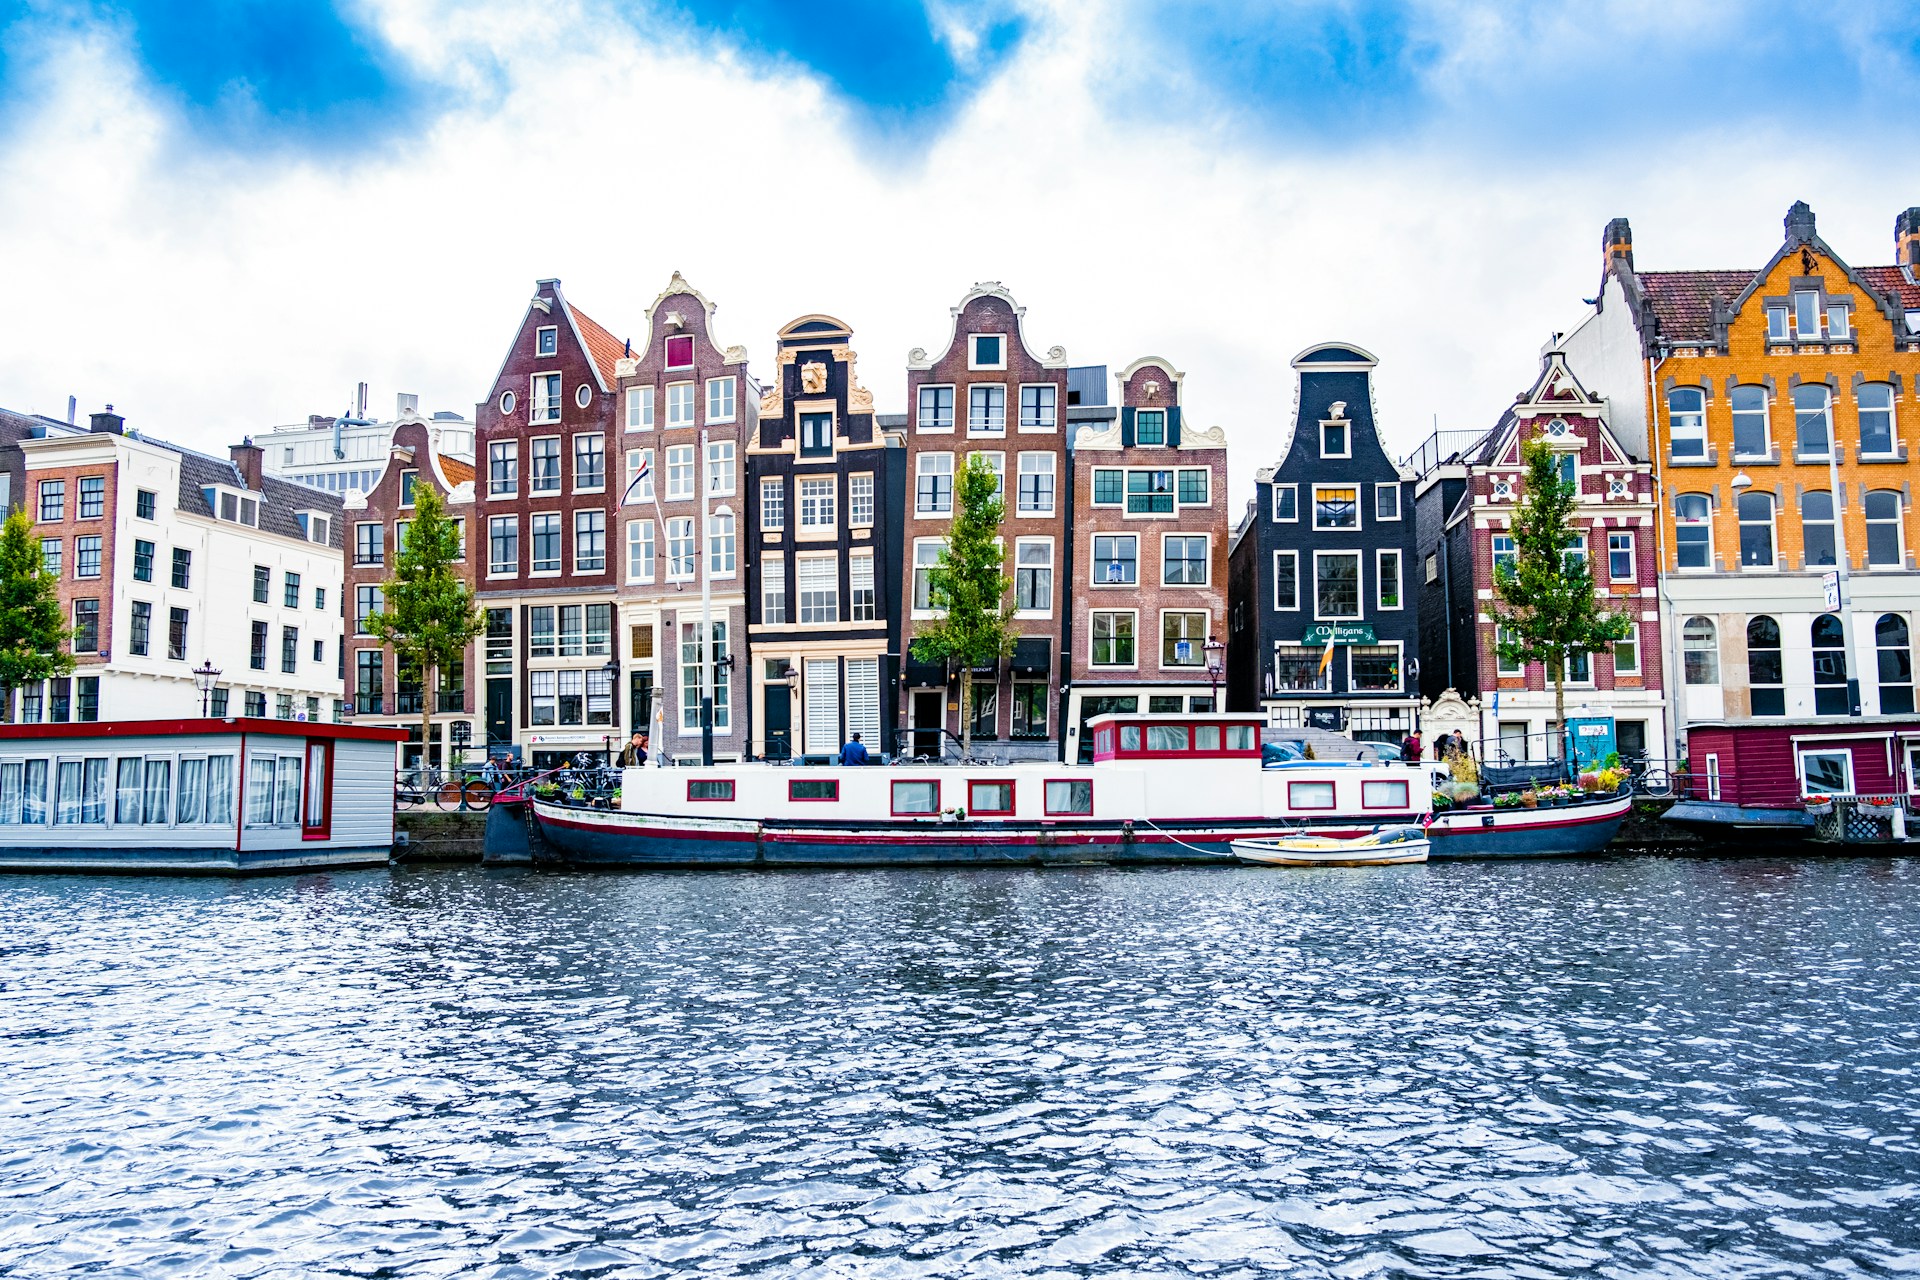 Plan zwiedzania Amsterdamu - co zobaczyć i gdzie się zatrzymać